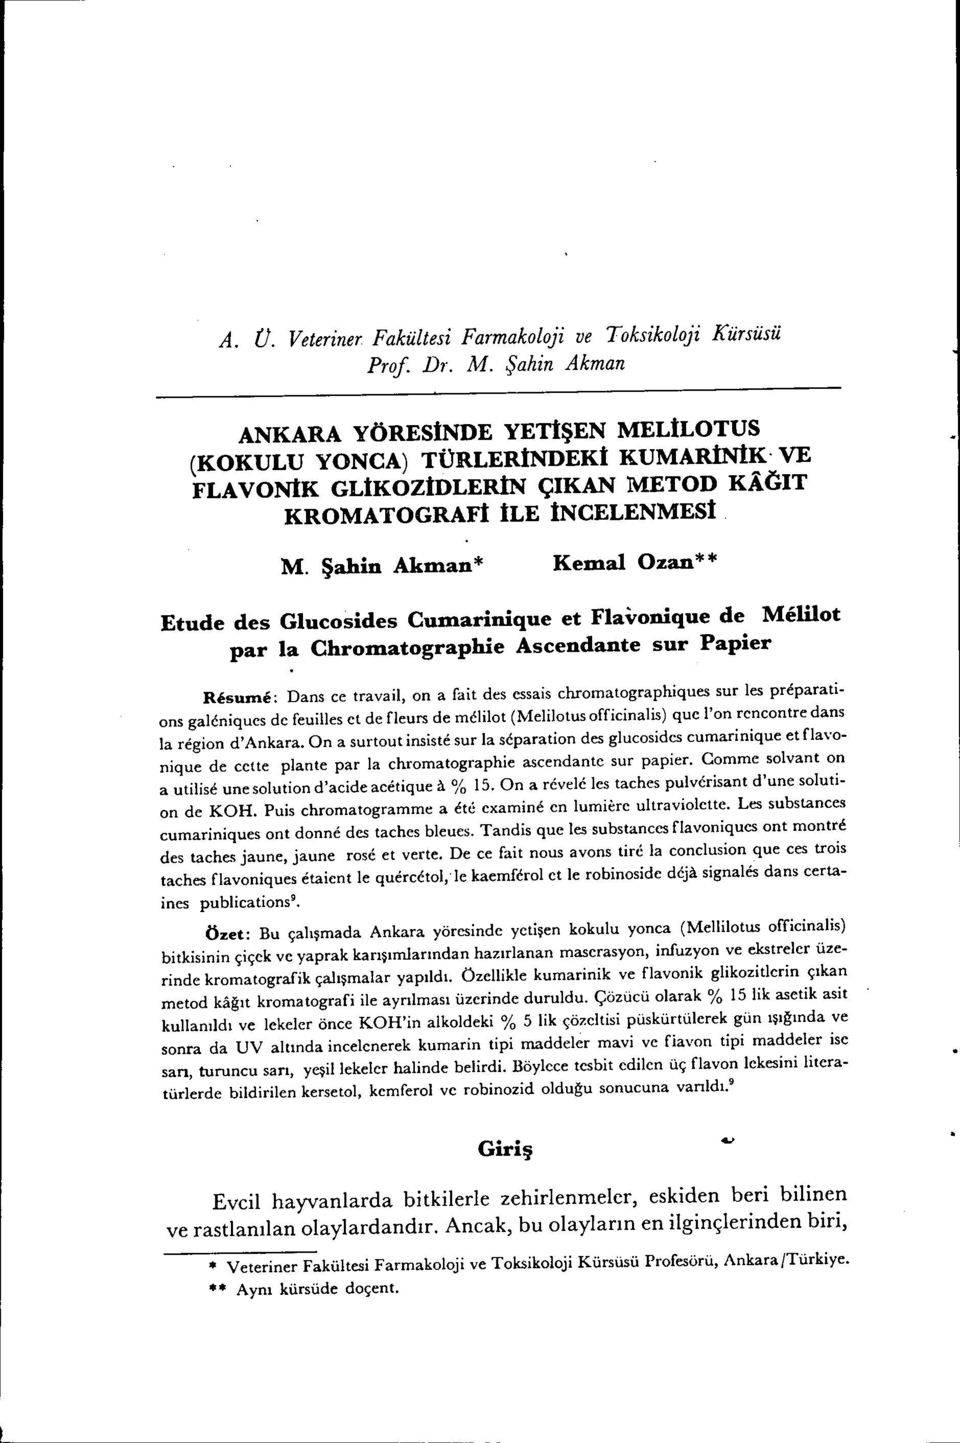 Şahn Akman* Kemal Ozan* * Etude des Glucosdes Cumarnque et Flavonque de Mellot par la Chromatographe Ascendante sur Paper Resunu?